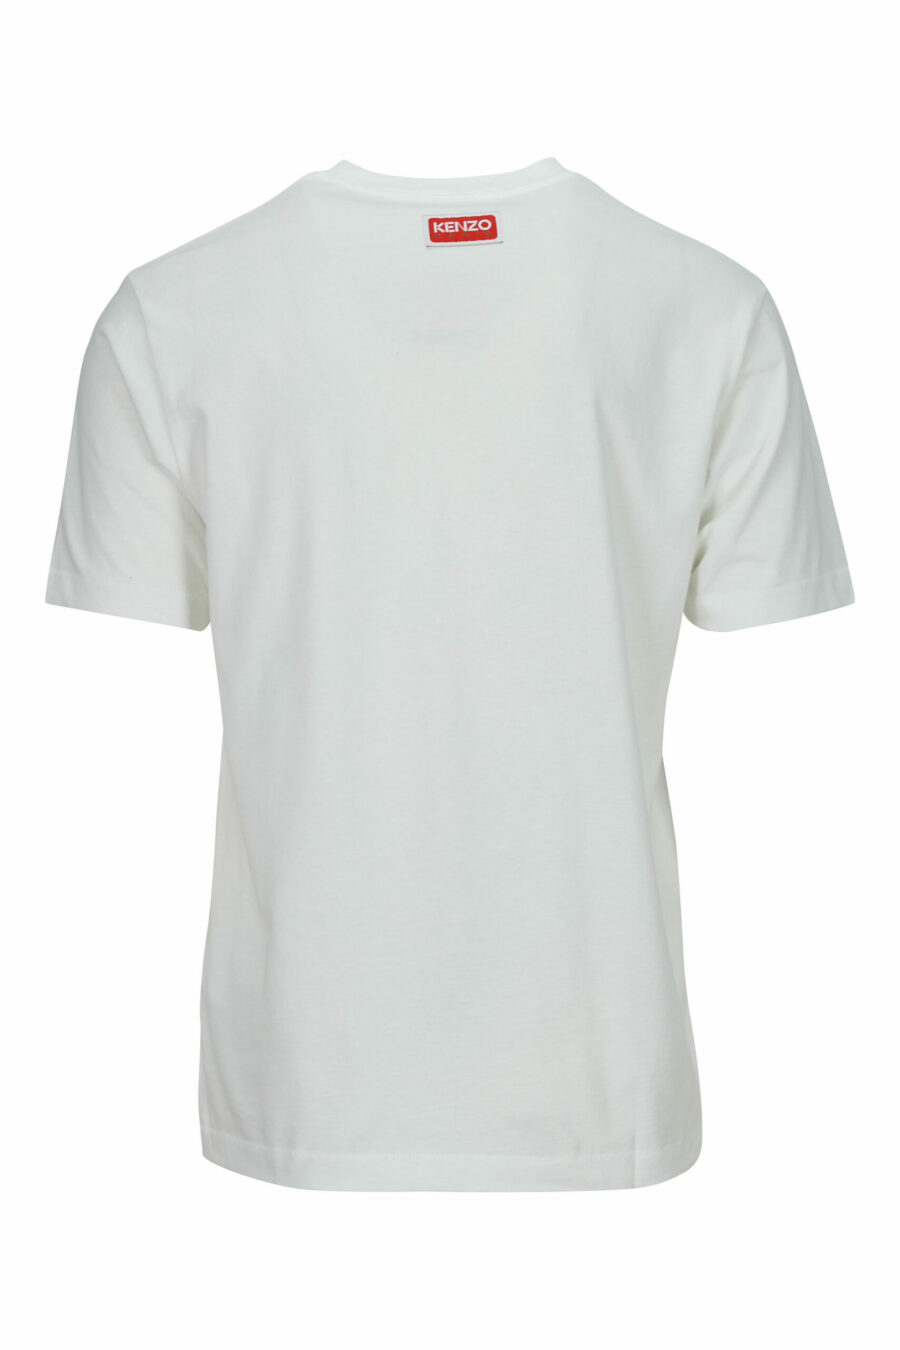 T-shirt blanc oversize avec logo embossé en forme de petit tigre - 3612230571716 1 scaled